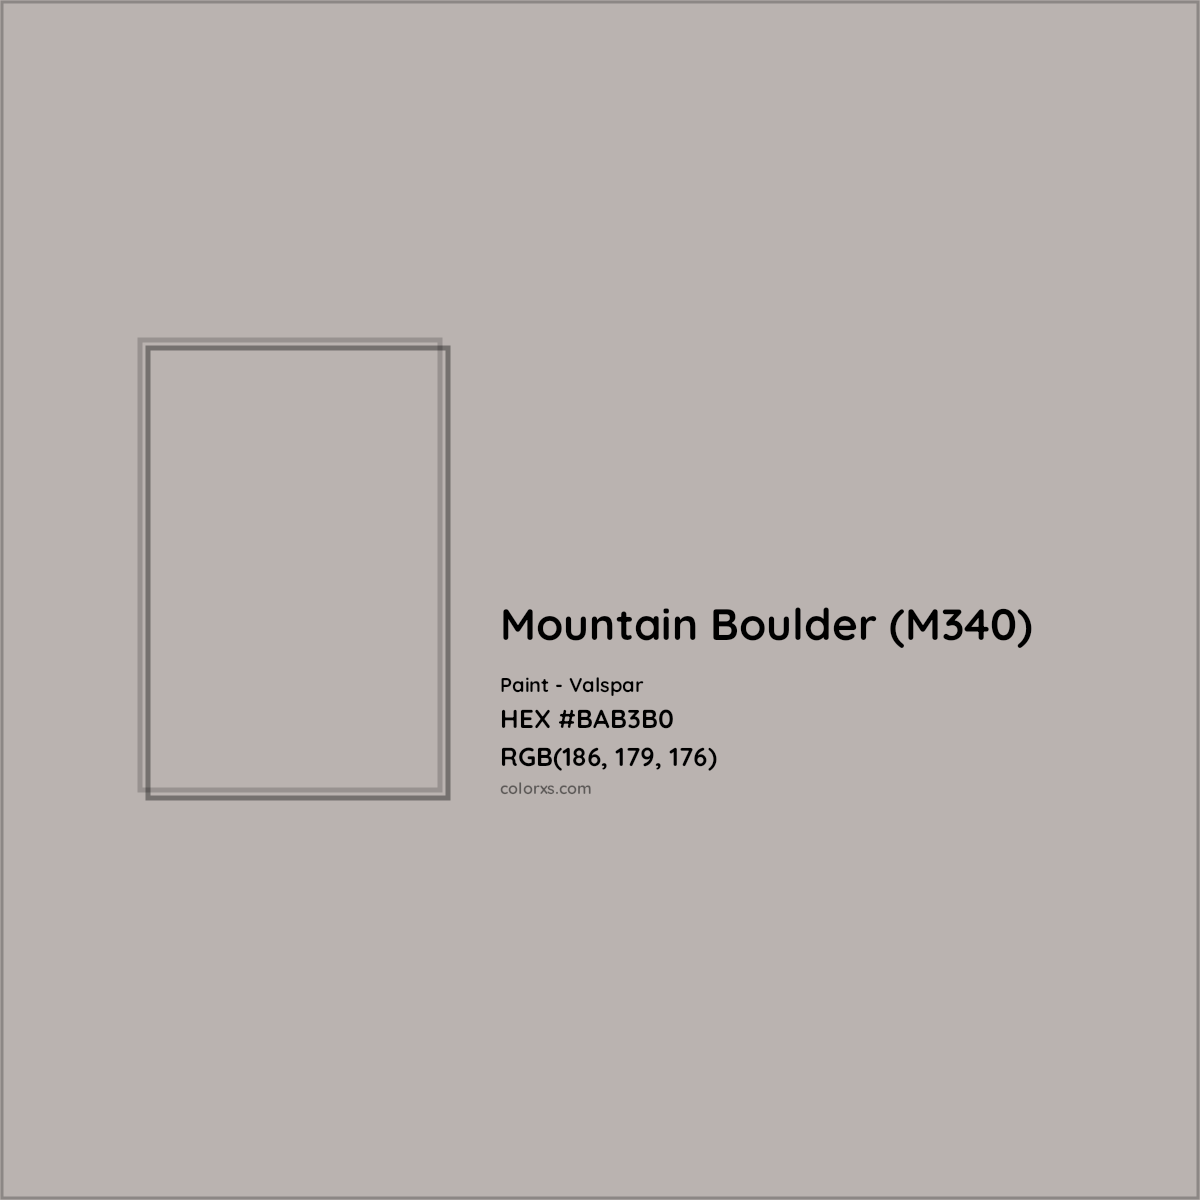 HEX #BAB3B0 Mountain Boulder (M340) Paint Valspar - Color Code